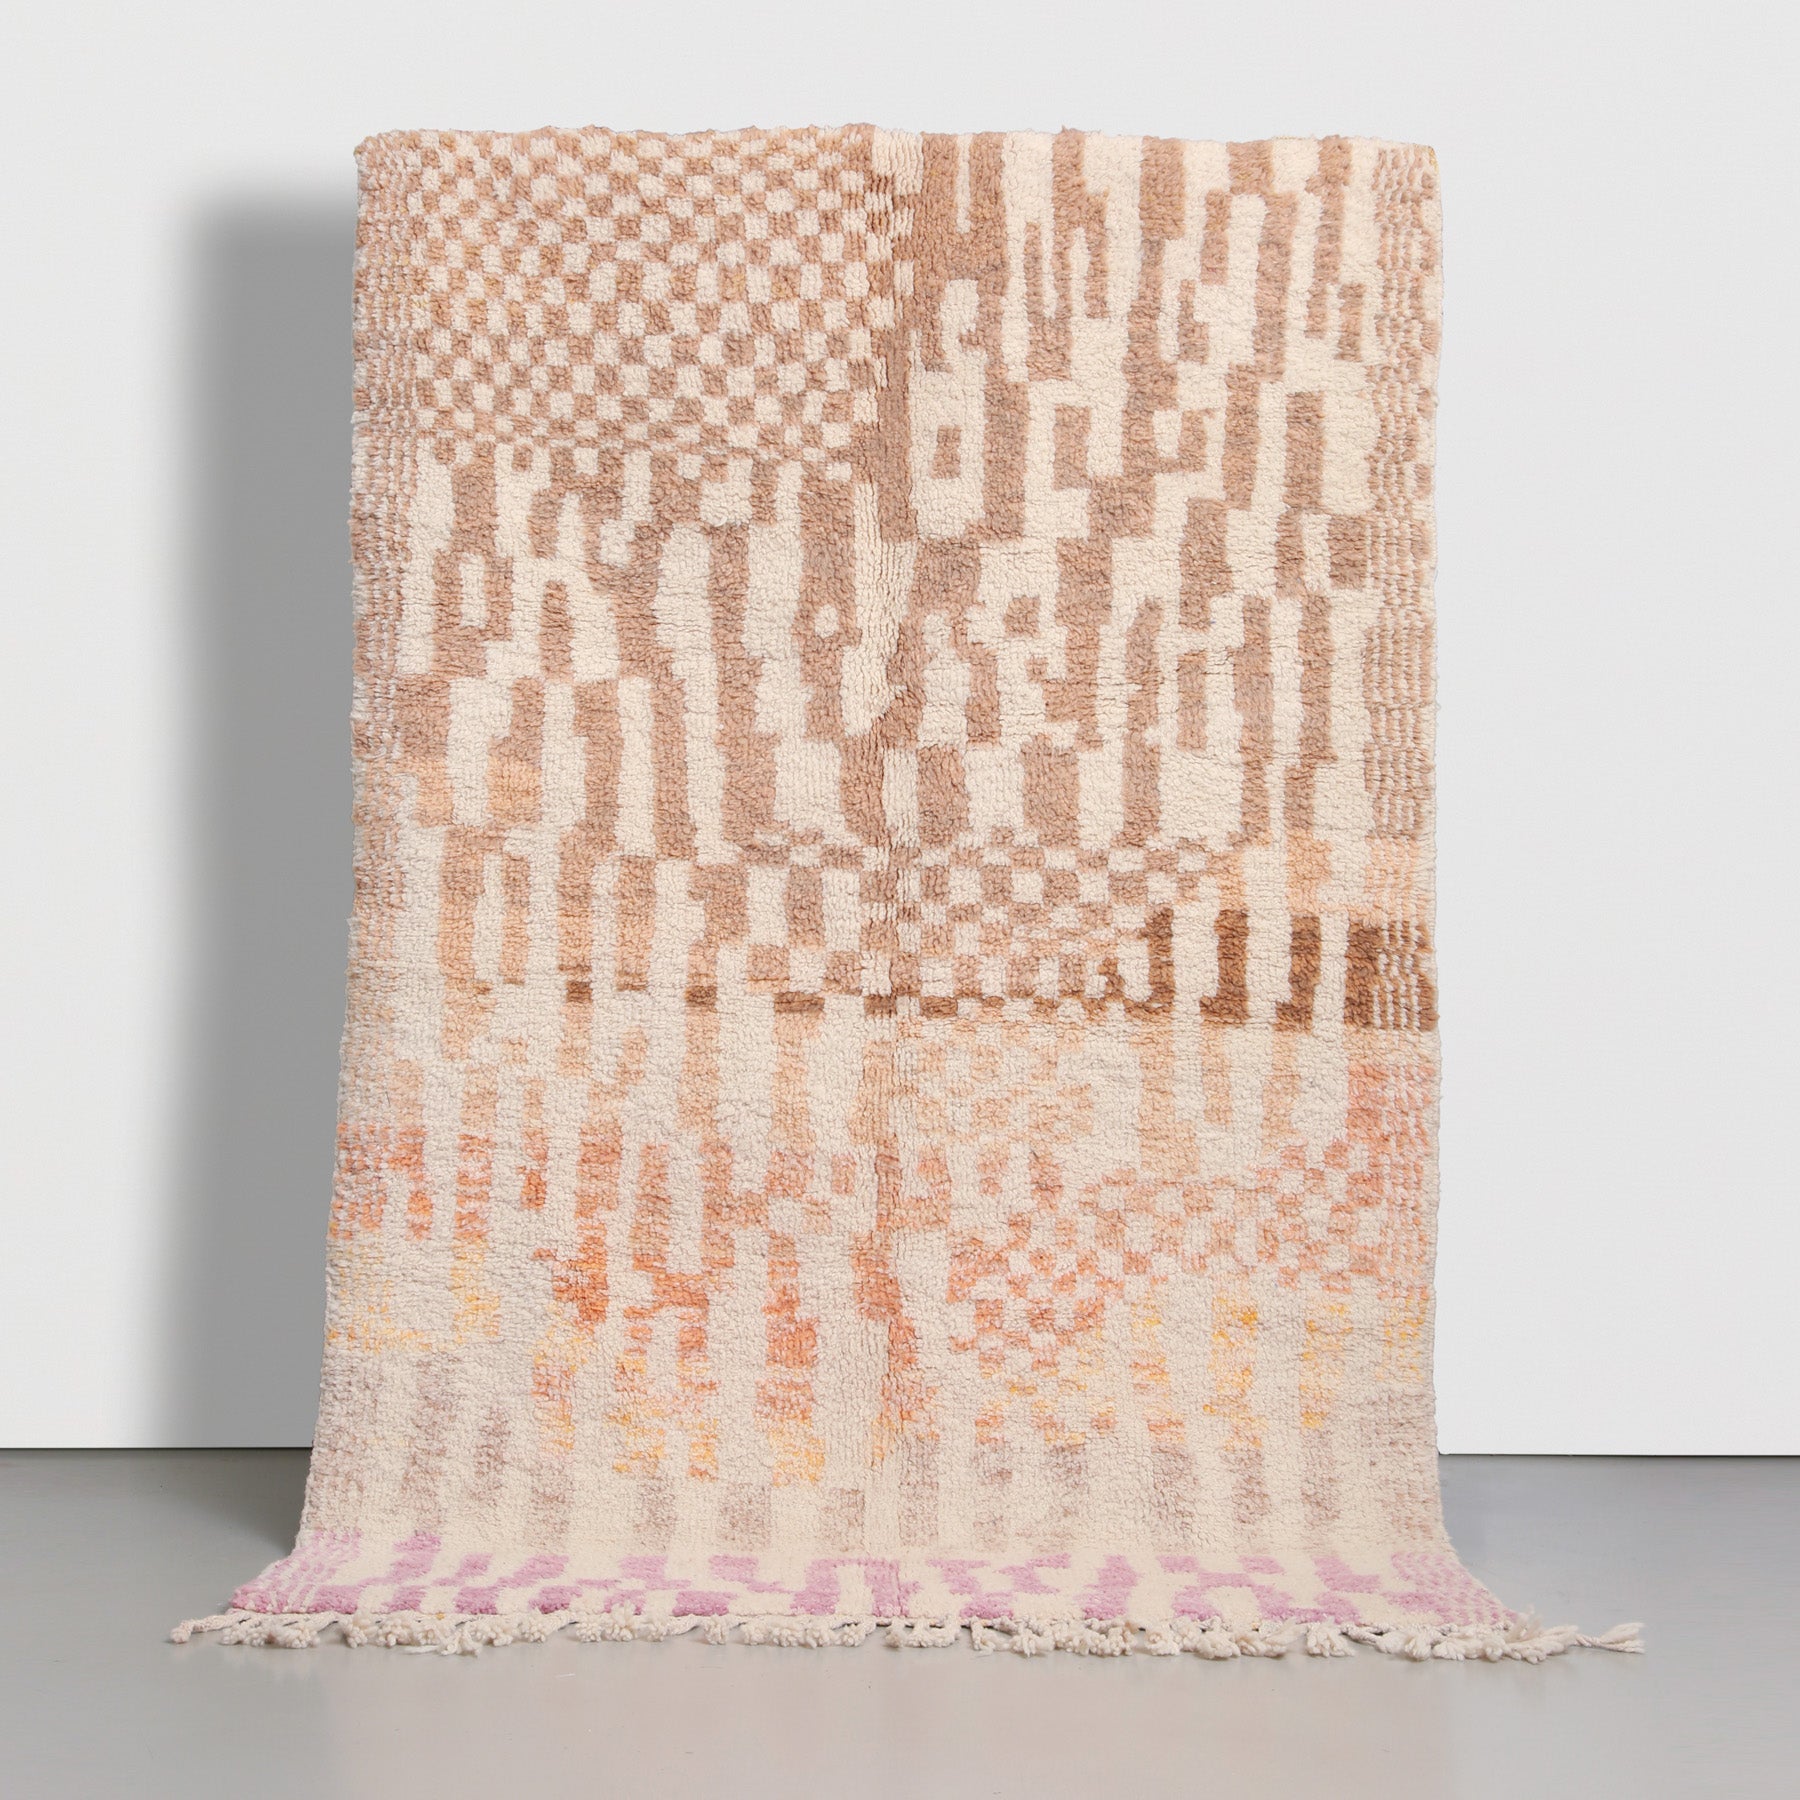 tappeto stile beni ourain realizzato a mano con disegno astratto multi colore e base chiara